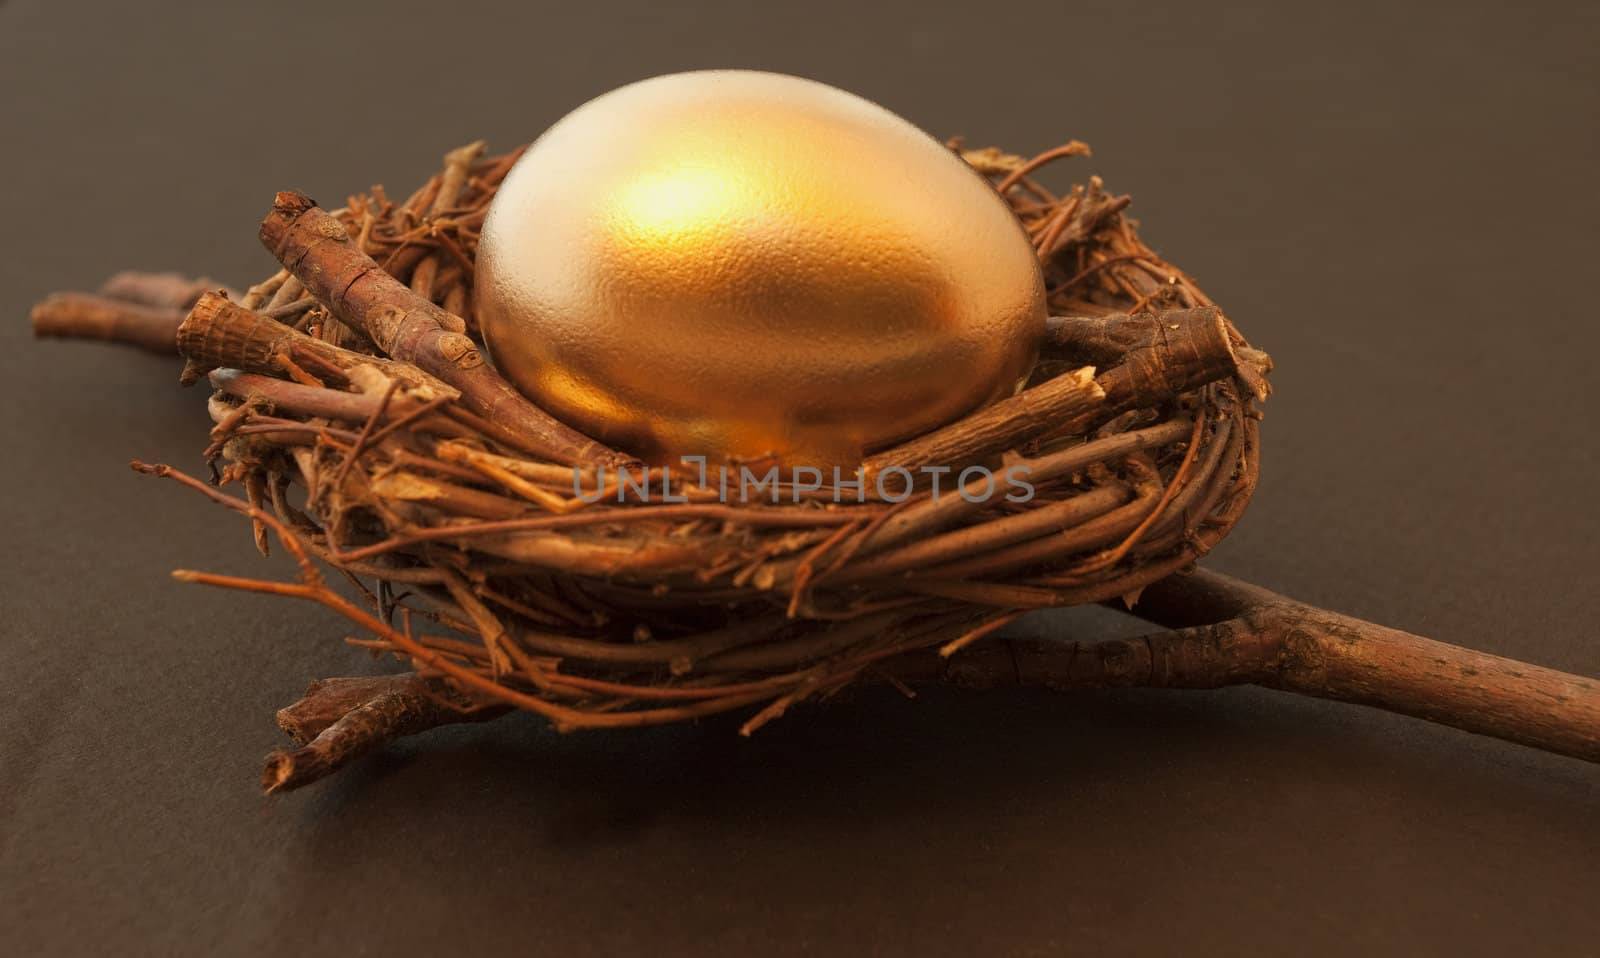 Golden egg in brown twig nest against black background